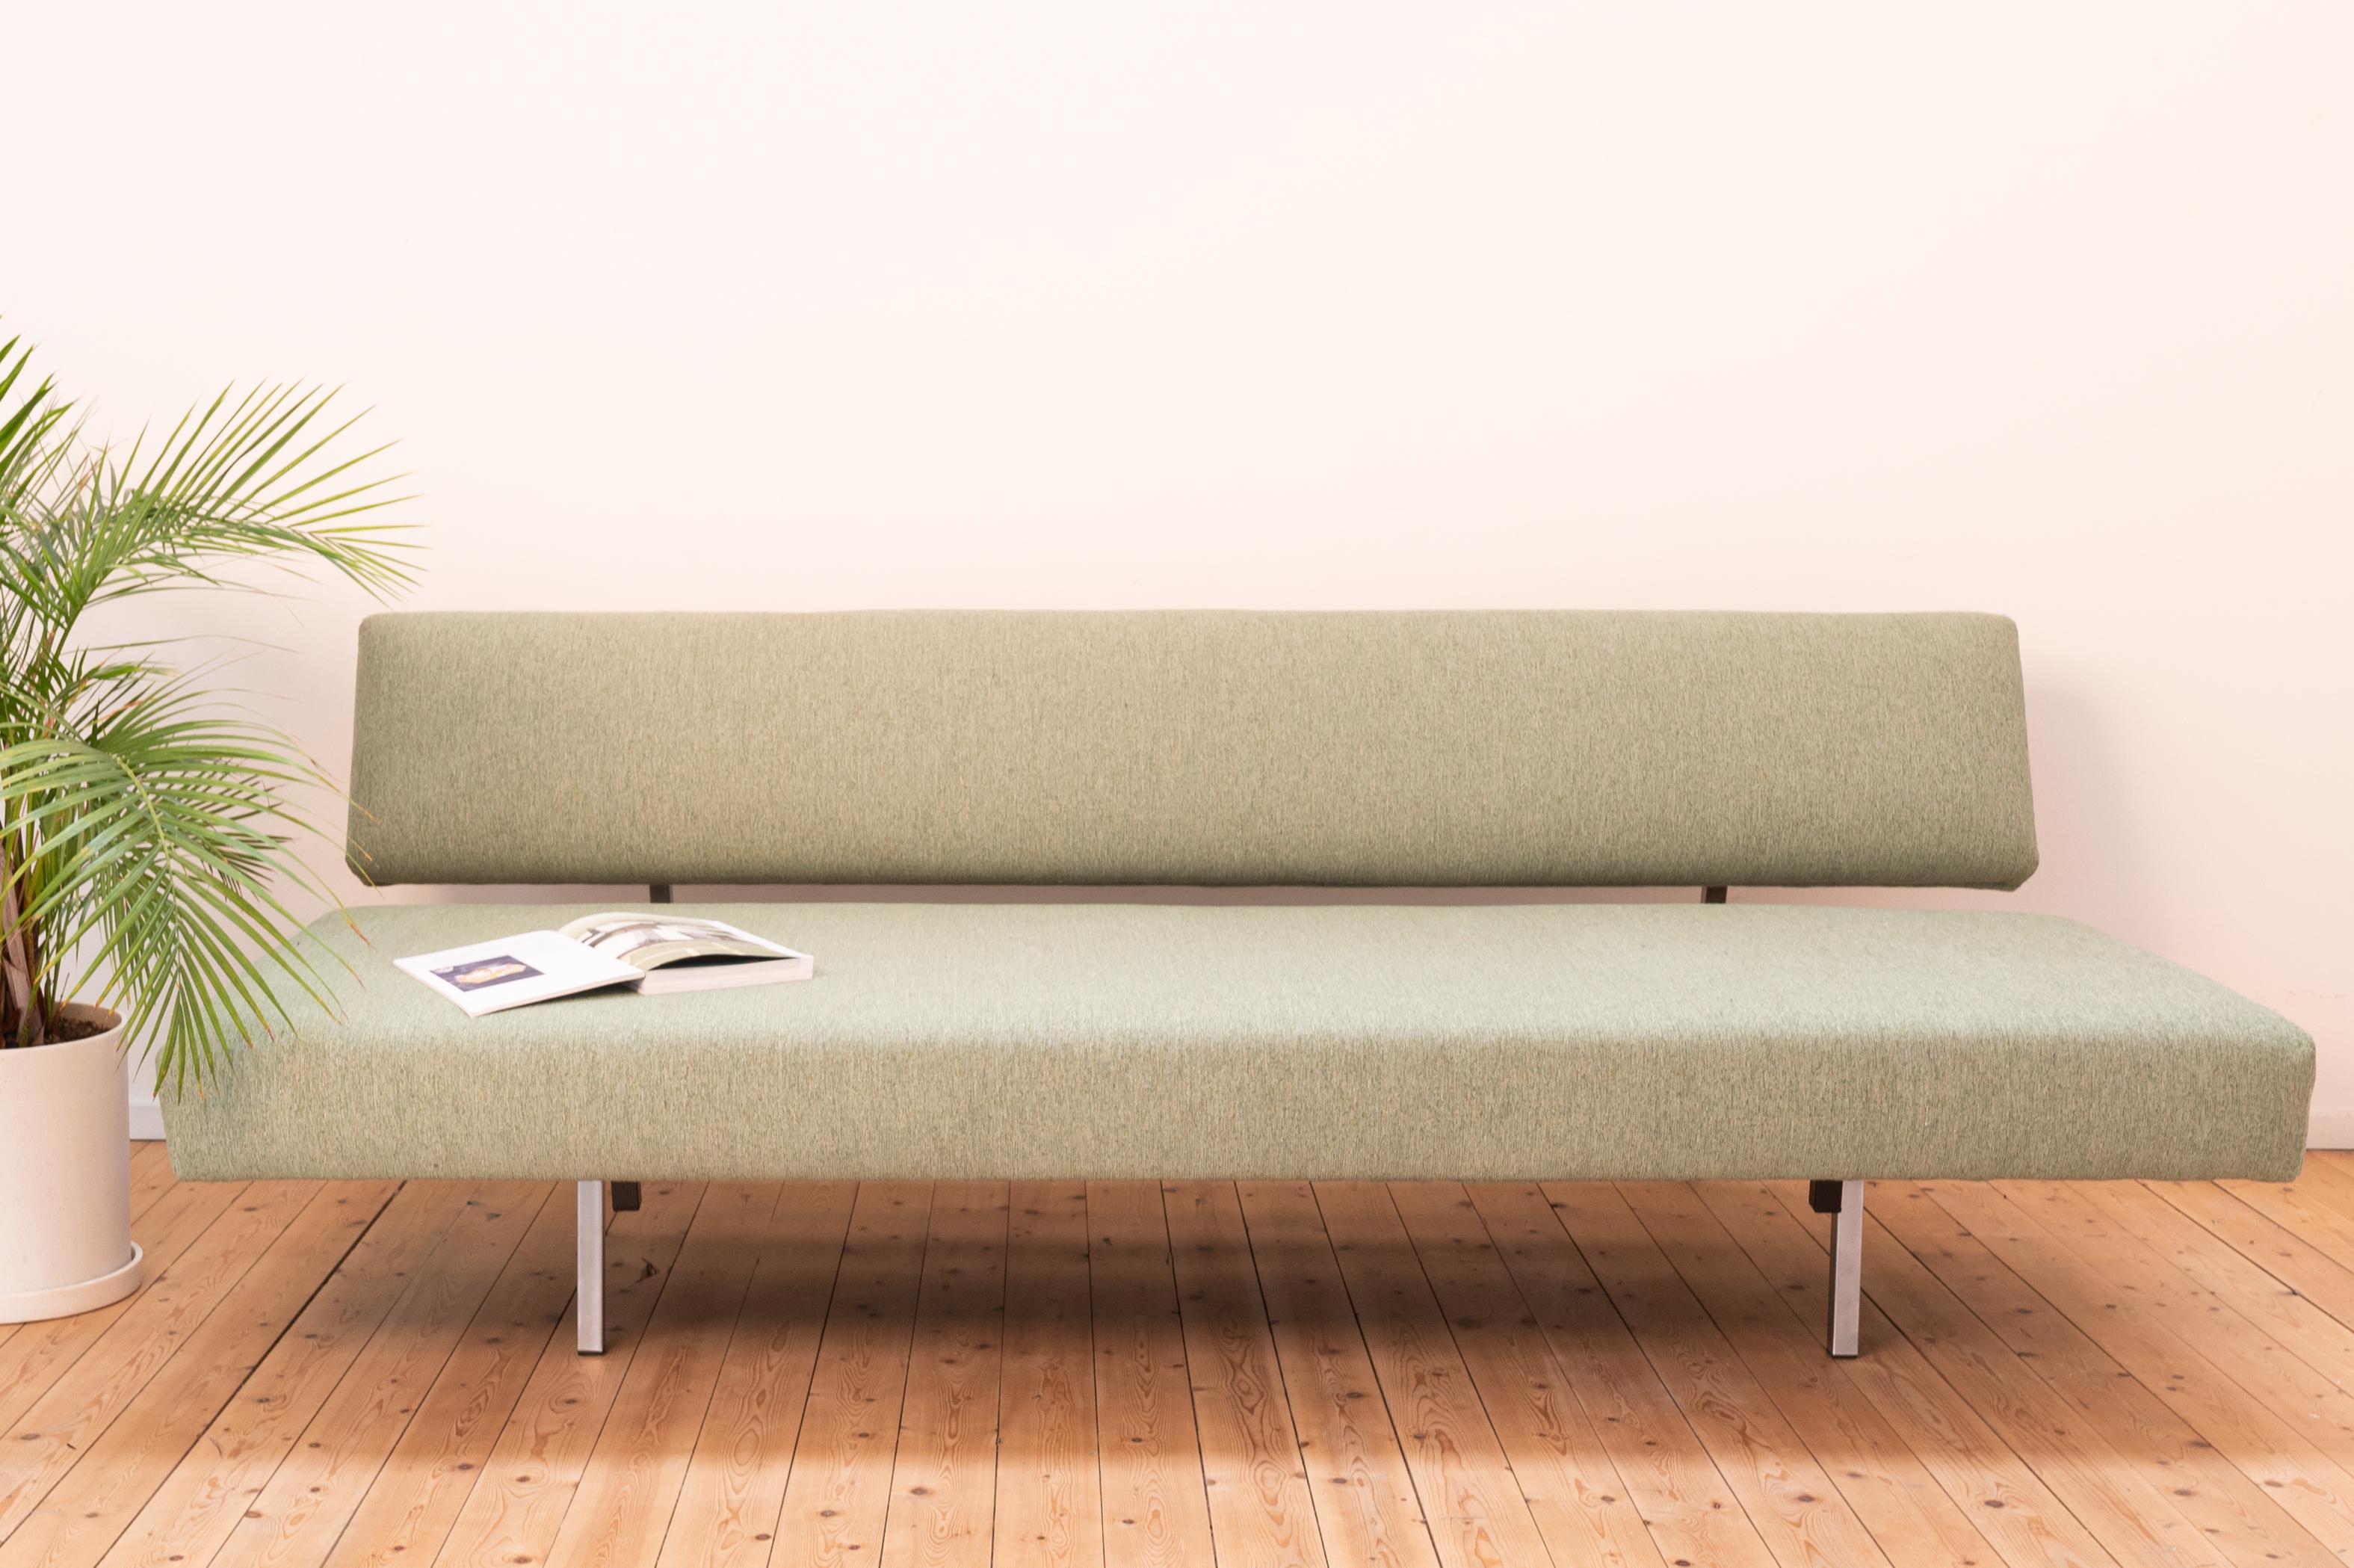 L'emblématique canapé BR 02 de Martin Visser, pour Spectrum. Ce canapé-lit de style moderne du milieu du siècle a été remis à neuf par nos soins et a reçu un nouveau revêtement qualitatif vert pâle. L'assise et le dossier sont soutenus par un cadre